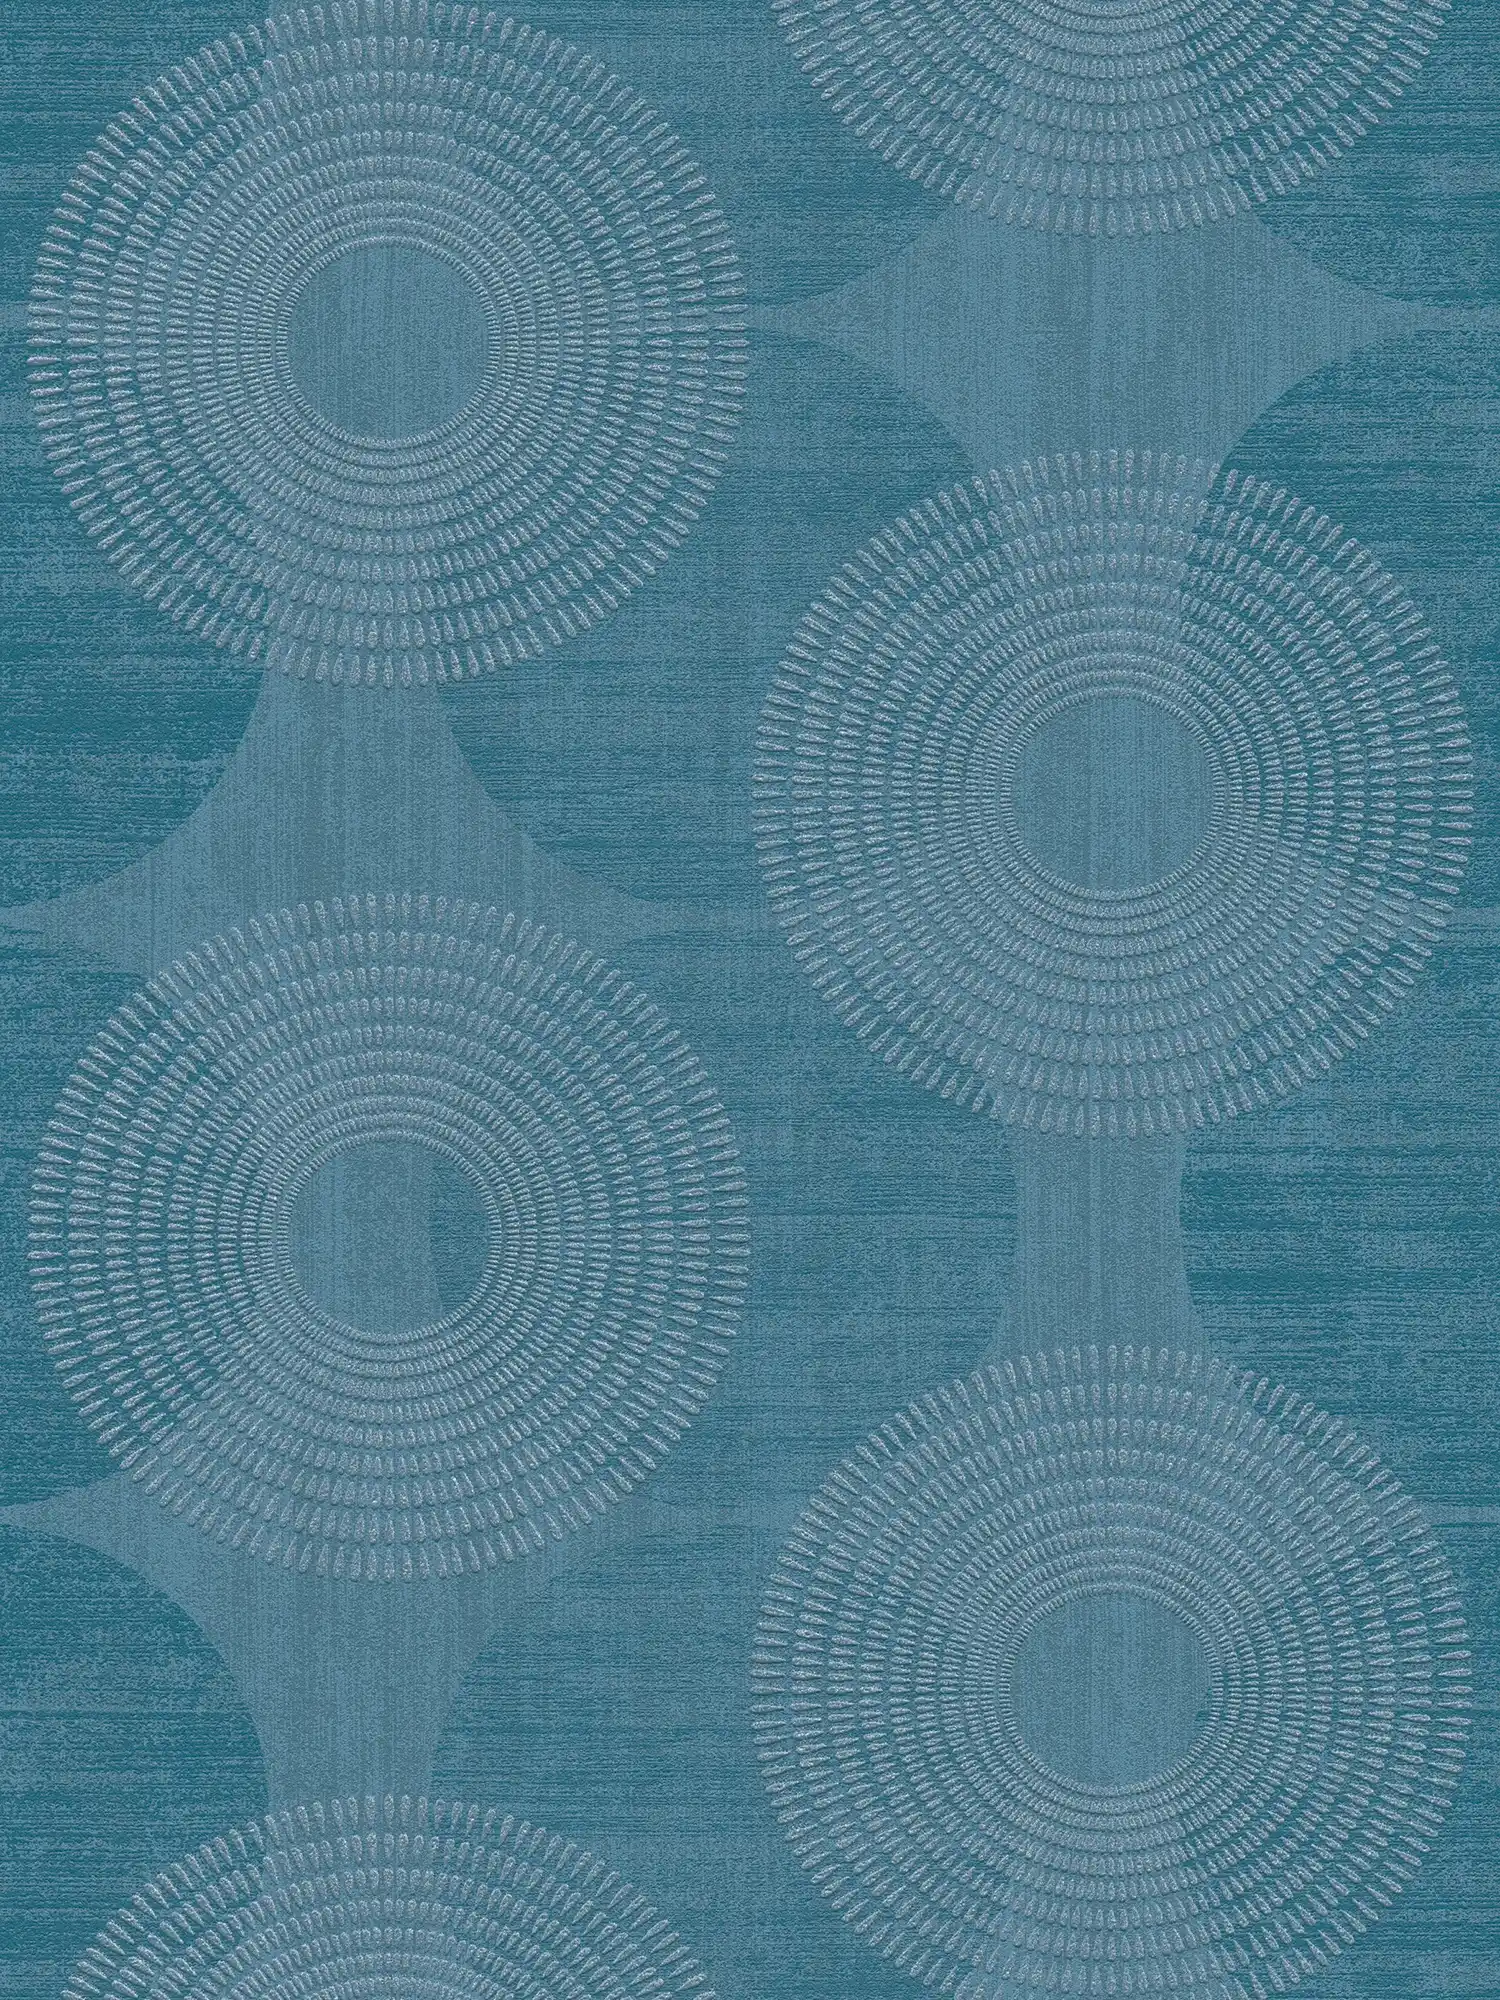 Effect wallpaper geometric Scandinavian design - blue
